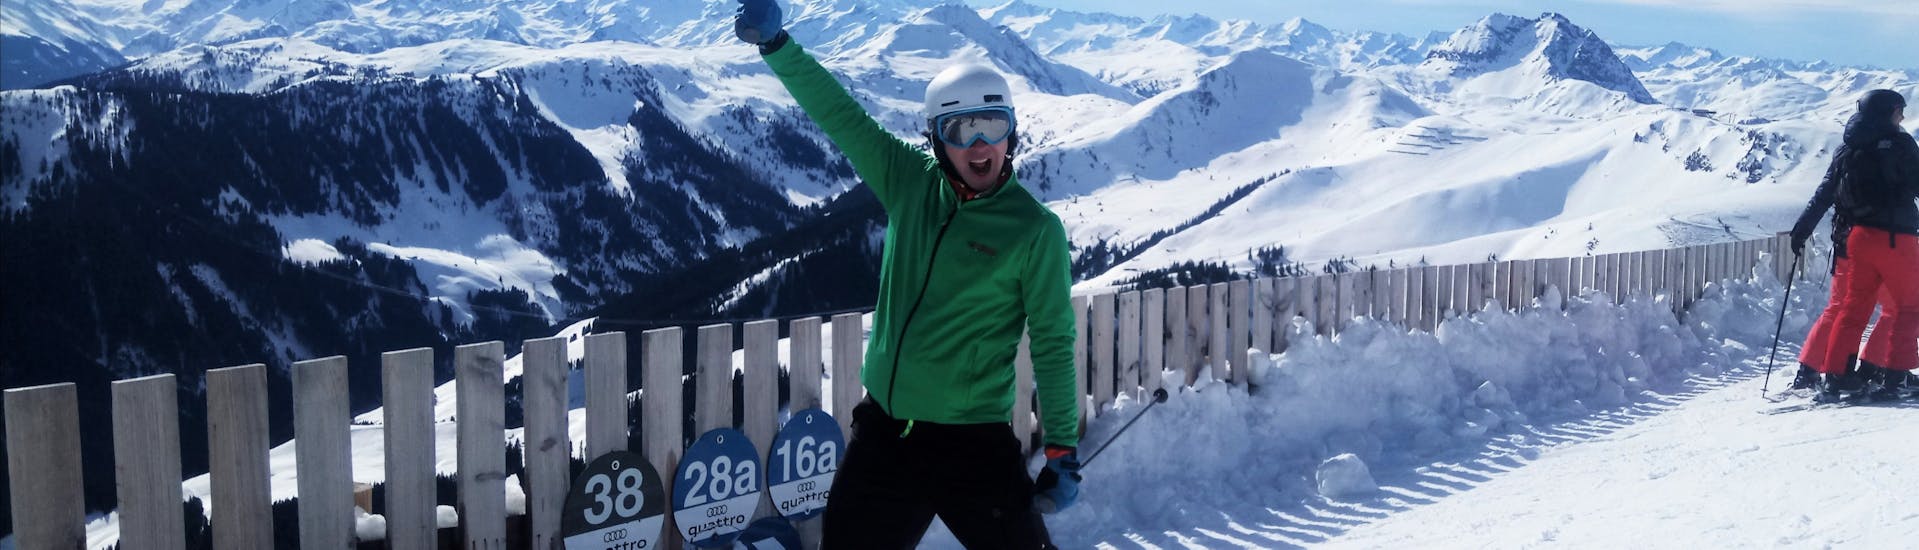 A skier on the slopes of the Kitzbühel Alps during his private ski safari in Kitzbühel with Skiart ski school.